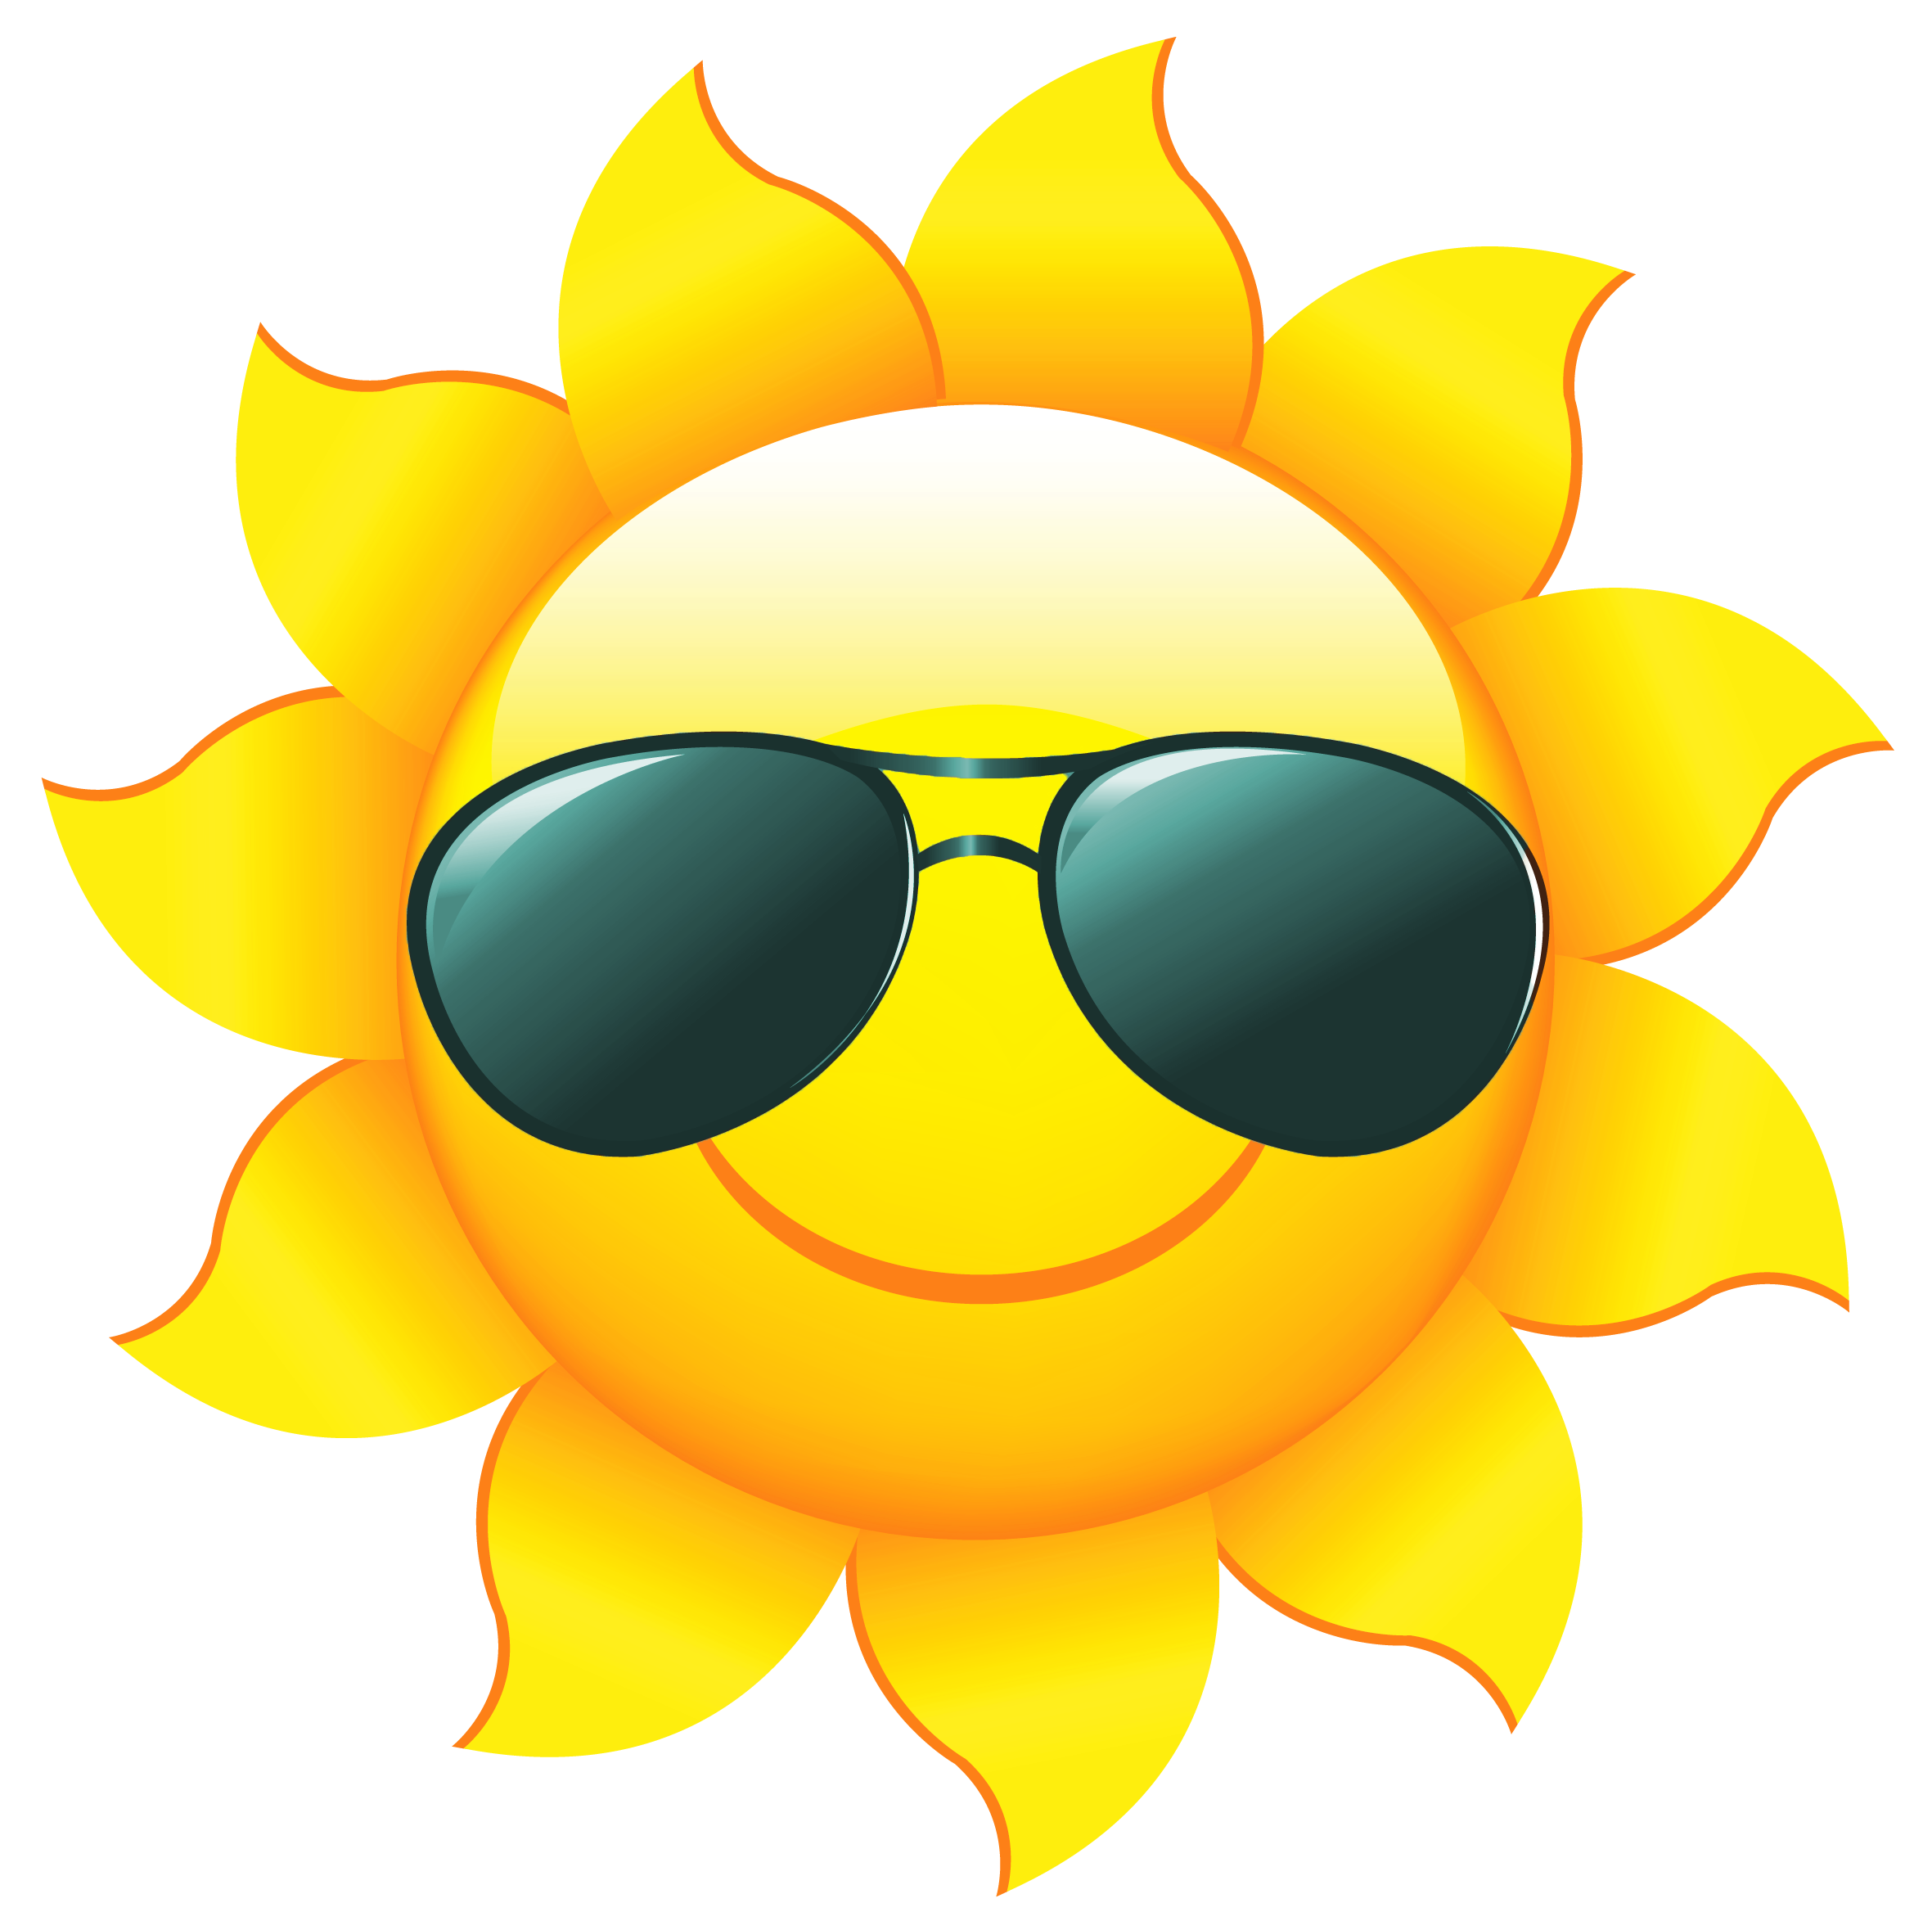 Sunshine Home Health Care Logo - Cartoon Sun